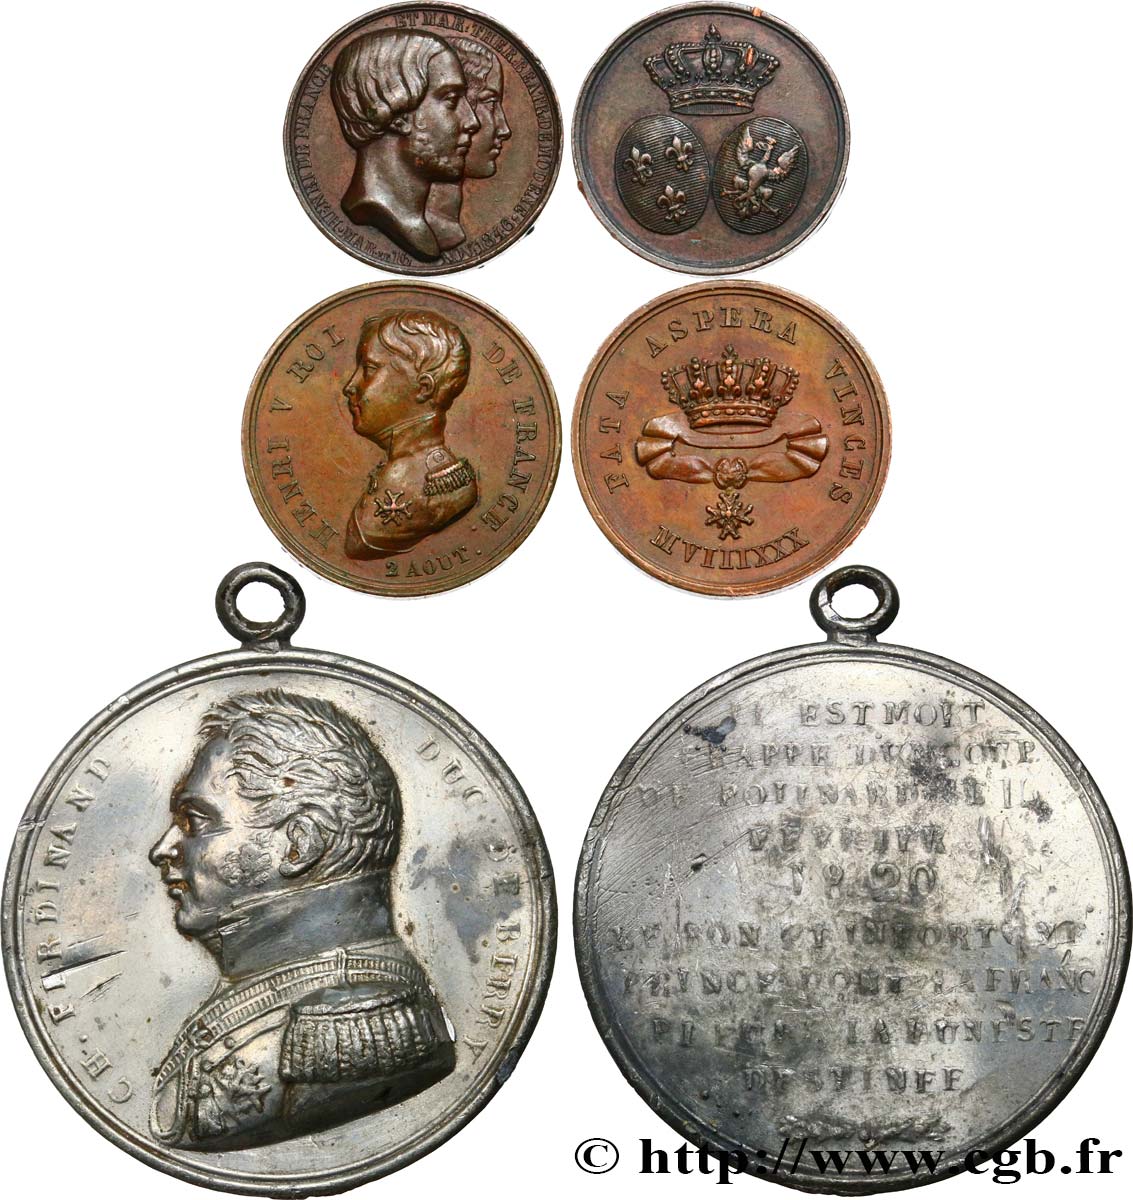 HENRI V COMTE DE CHAMBORD Lot de 3 médailles relatives à la vie d’Henri V, comte de Chambord TTB